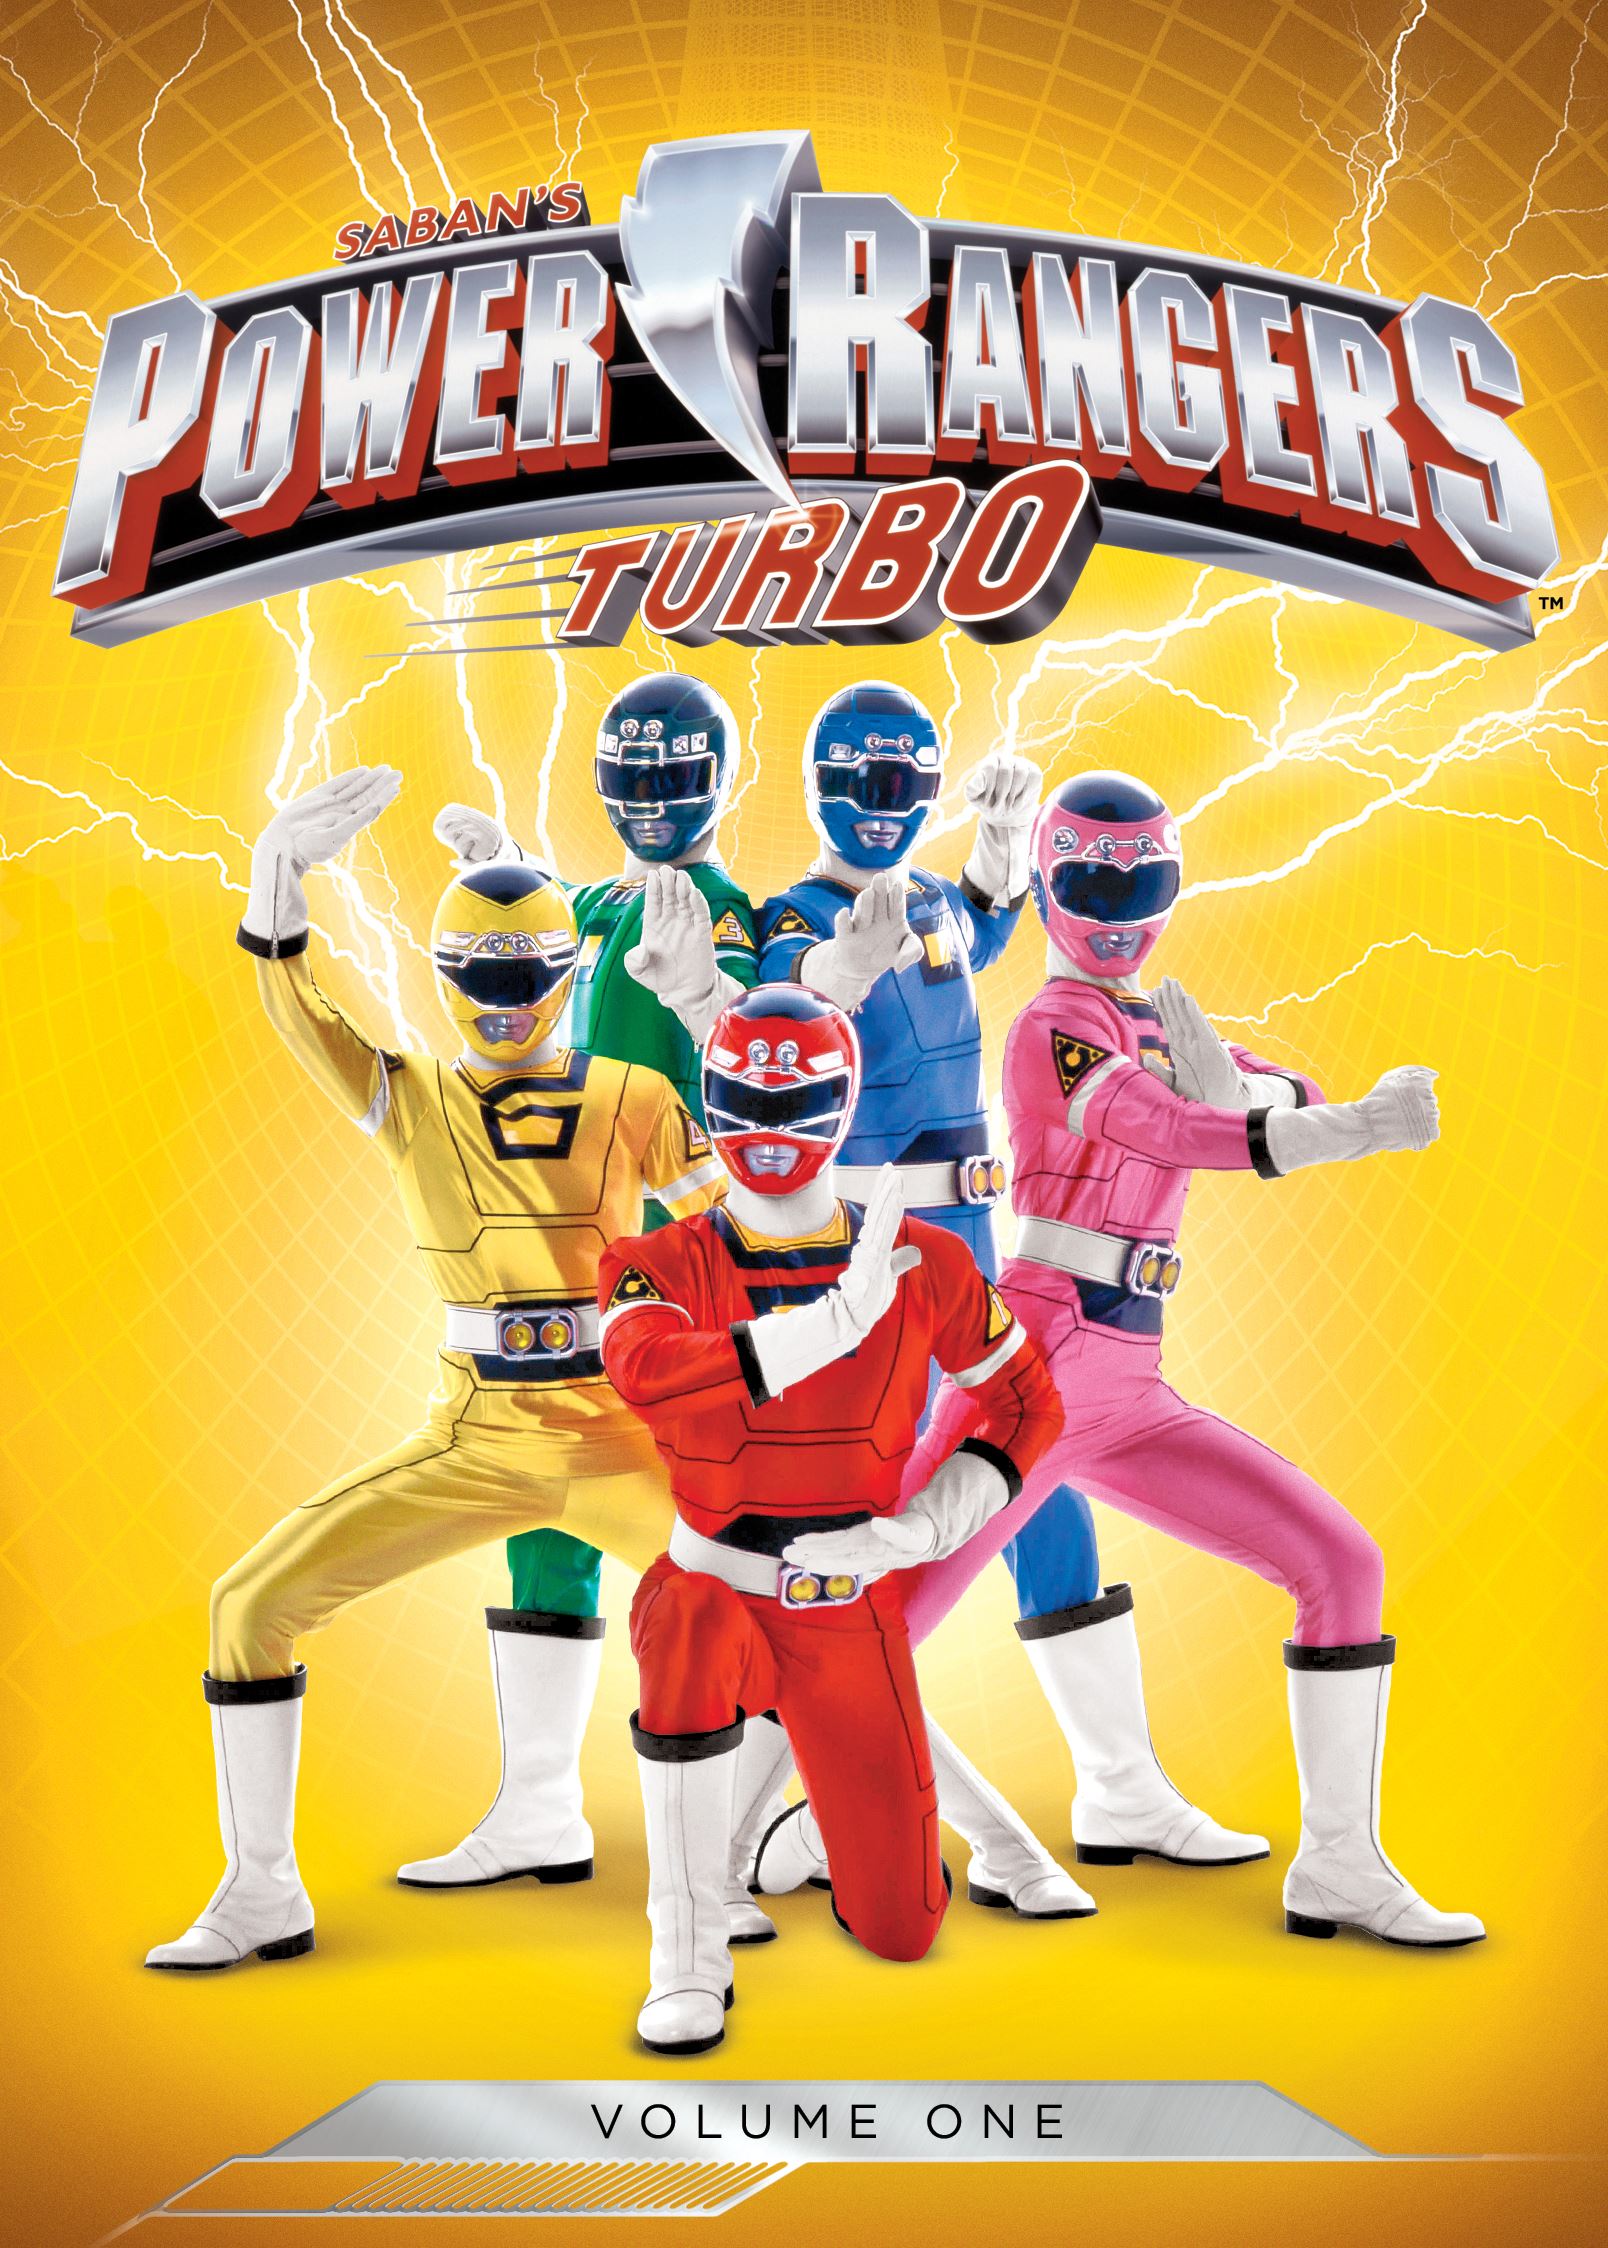 Power Rangers Turbo Vol Discs Dvd Best Buy